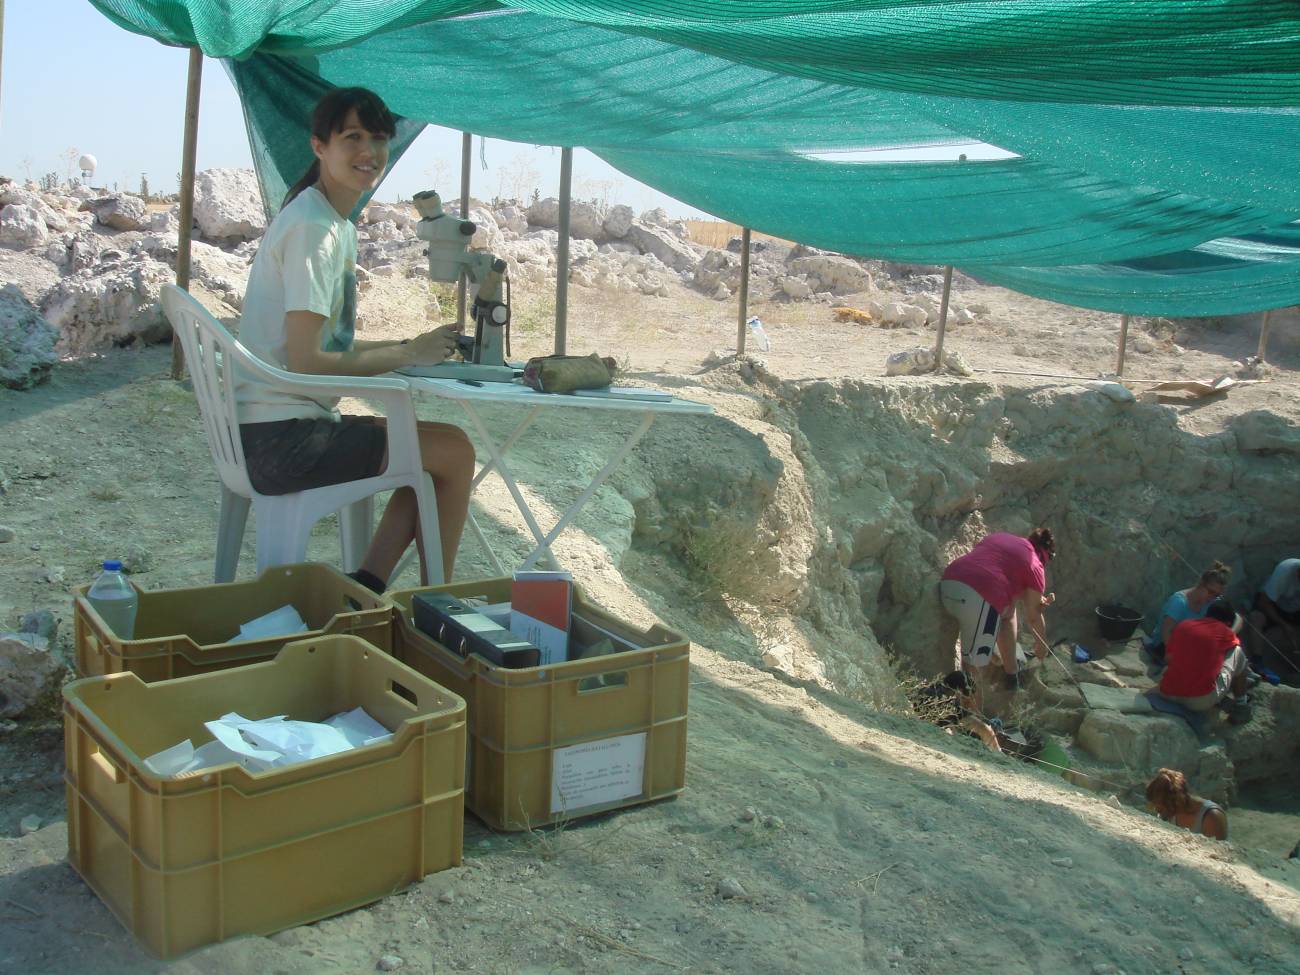 Yo taphonomic station 2 - Cinco Arqueólogas de España pasan el Verano trabajando en yacimientos a pesar del Coronavirus